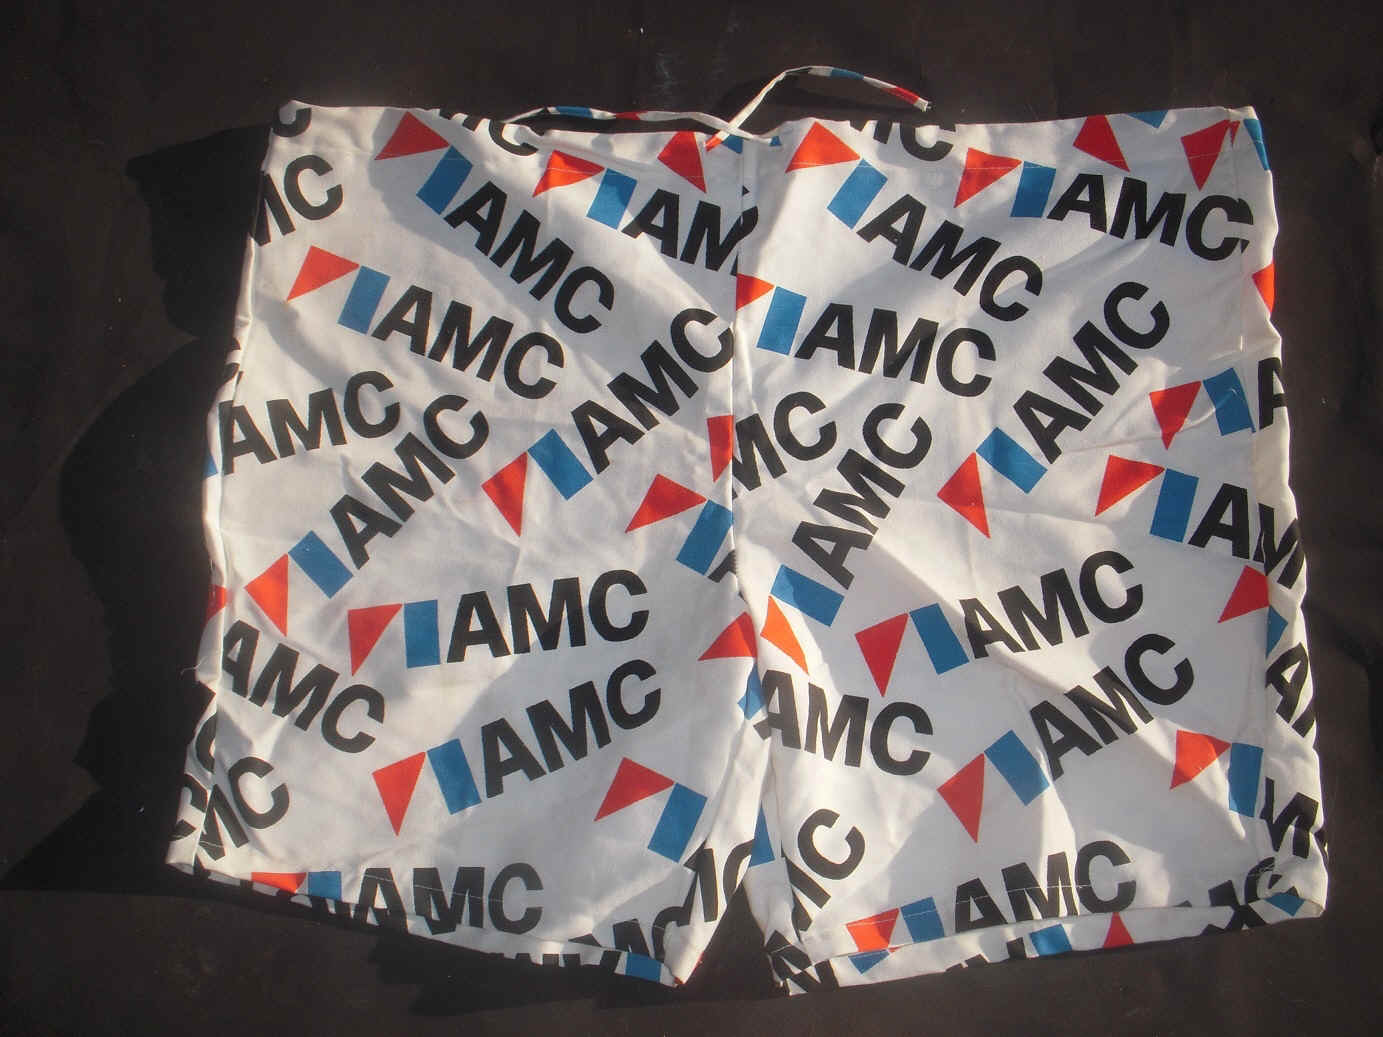 amc-logo-clothes-shorts.JPG (872989 bytes)